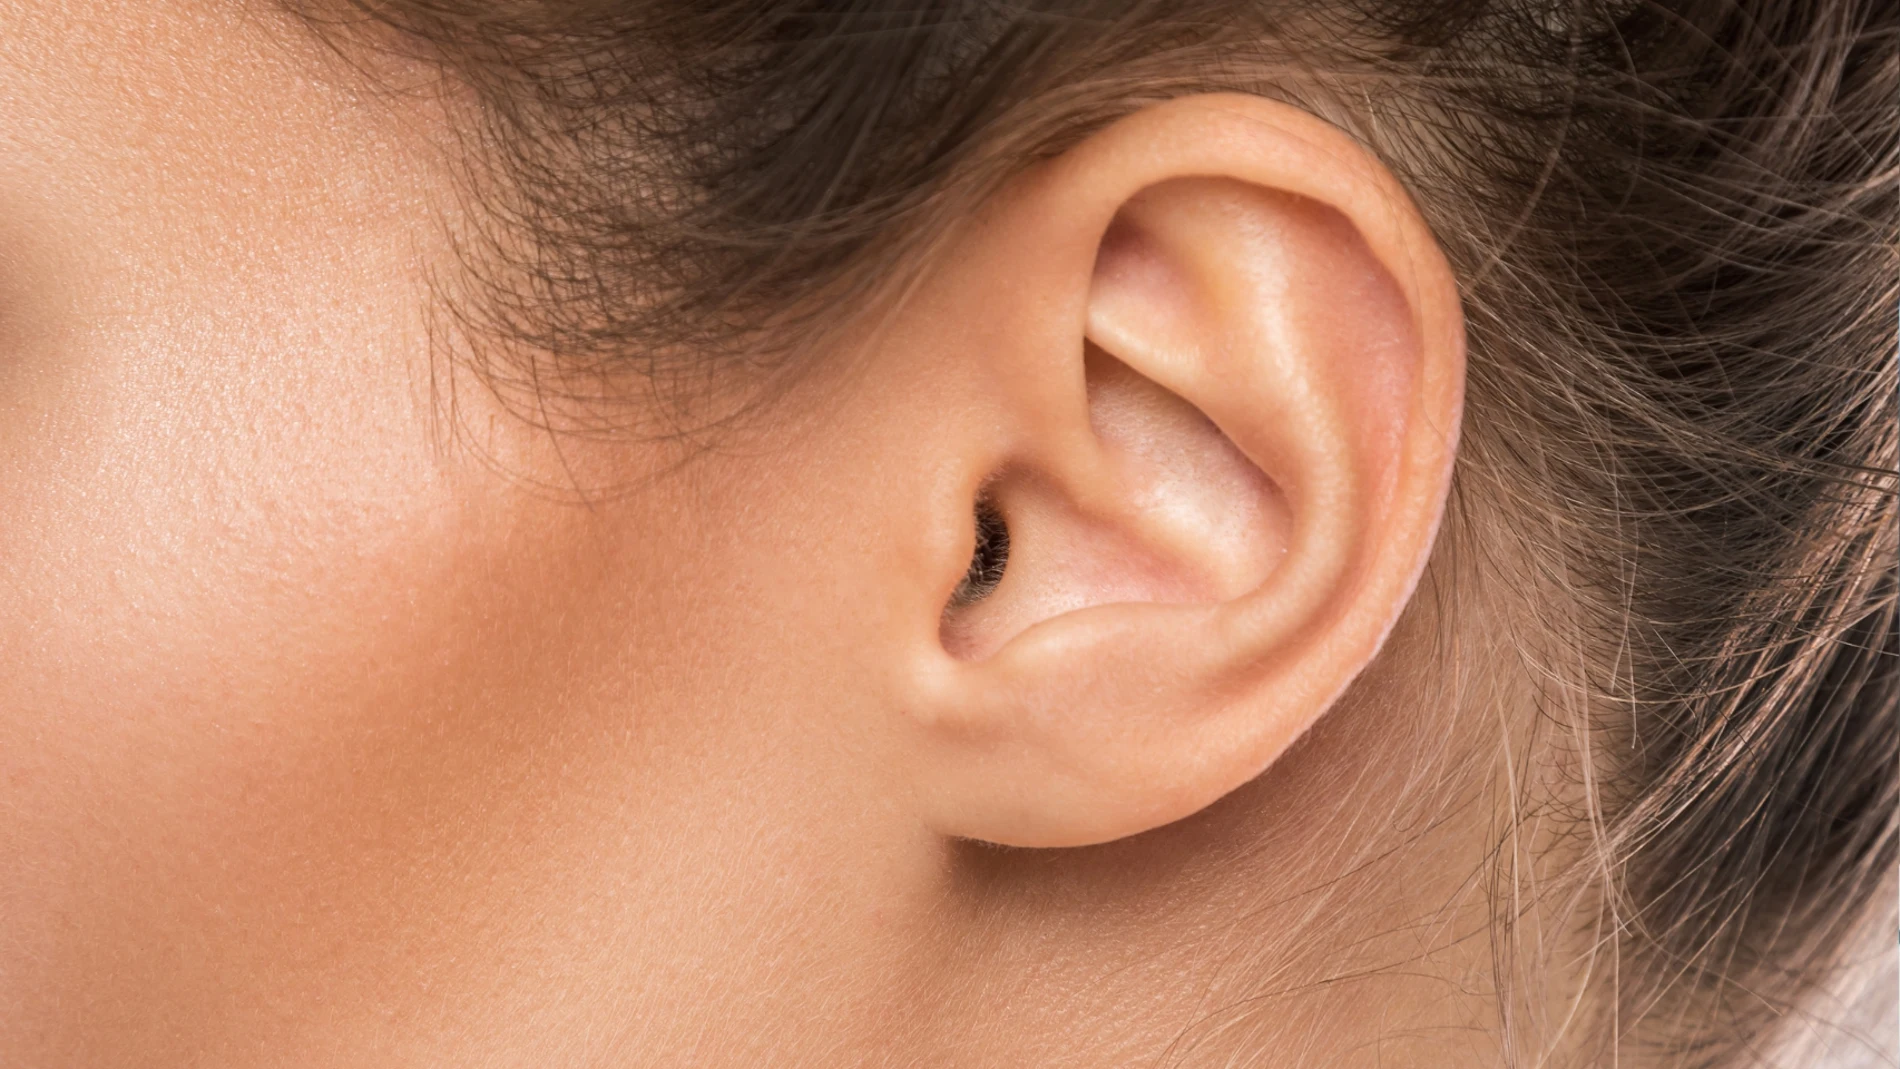 Expertos en salud auditiva revelan la forma segura y eficaz de limpiar los oídos